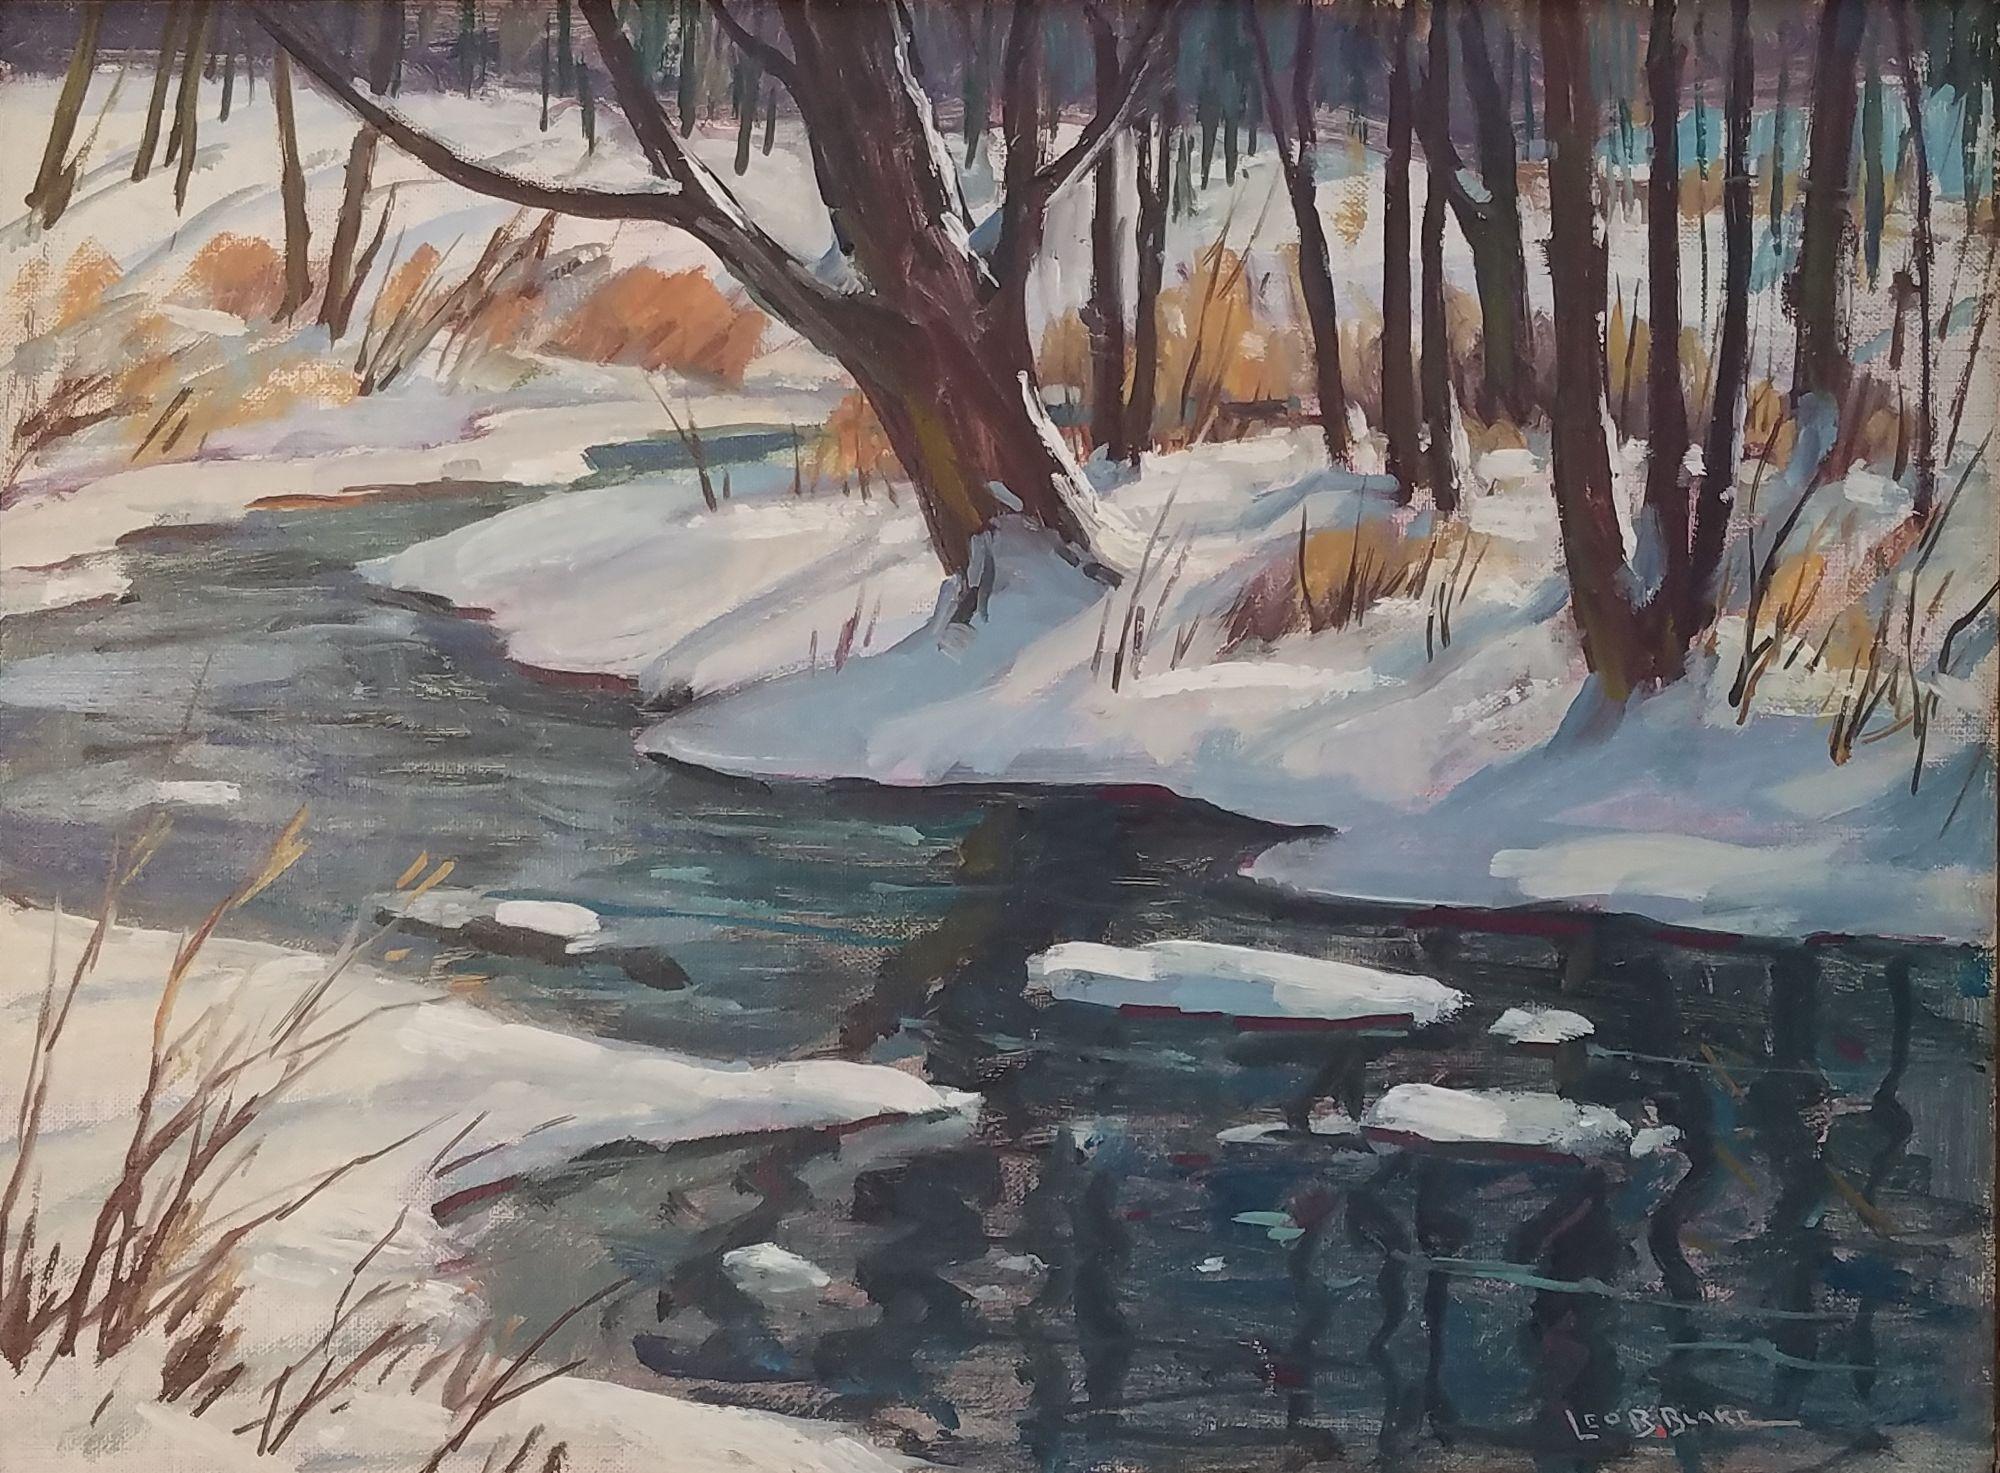 "Berkshires Winter Landscape, " Leo Blake, Snowy Stream in Massachusetts